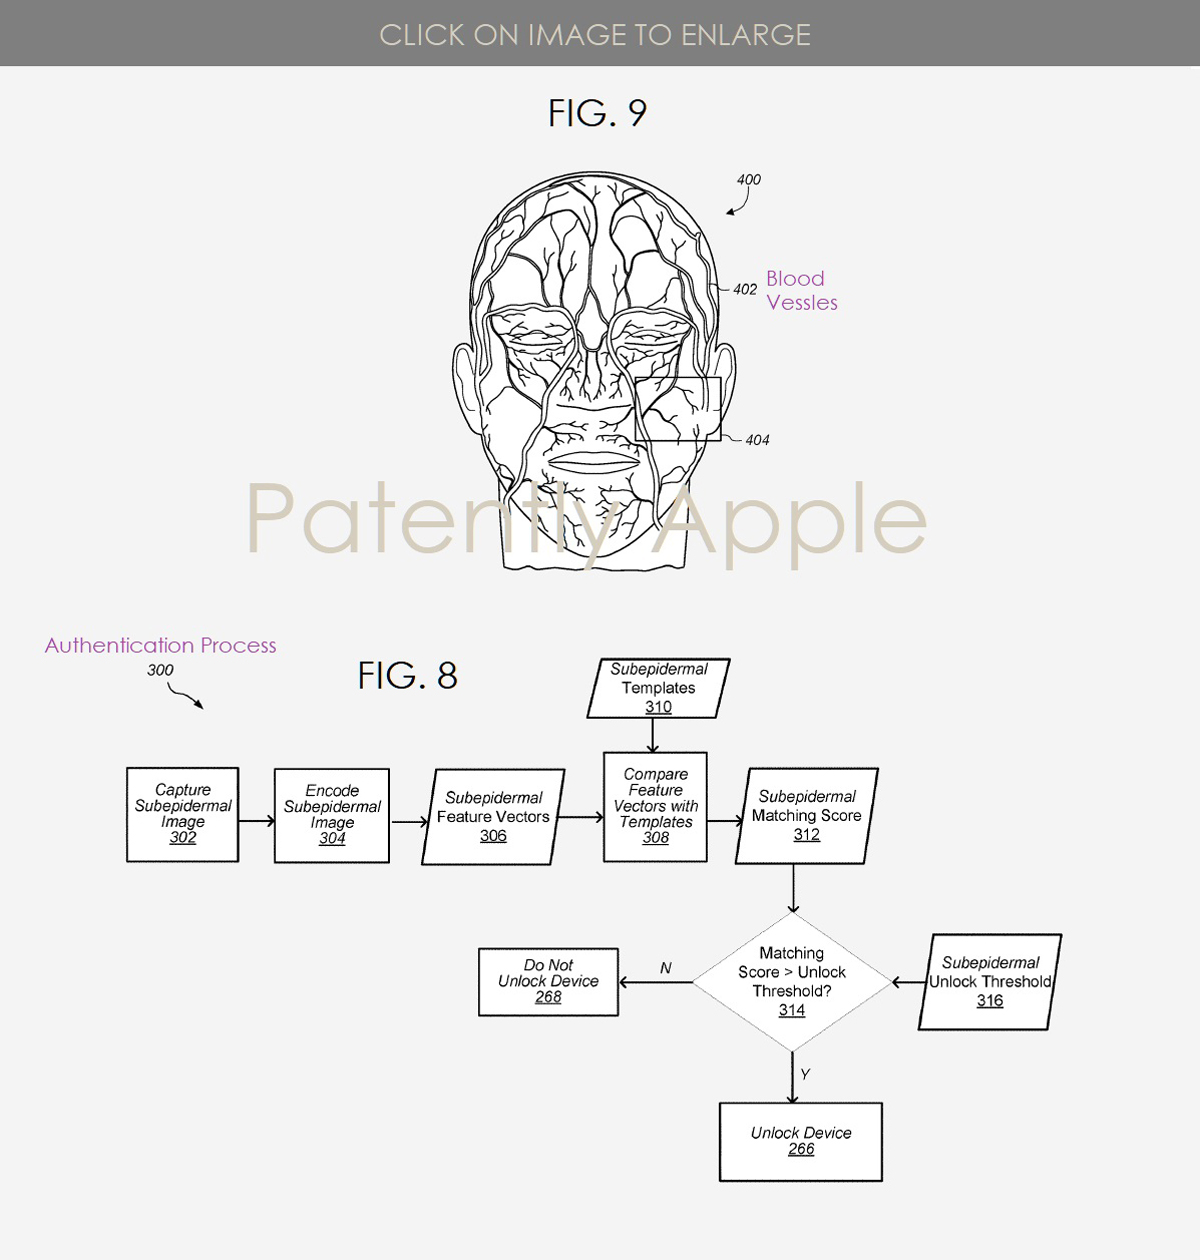 Escaneo de venas de identificación facial de patente de Apple